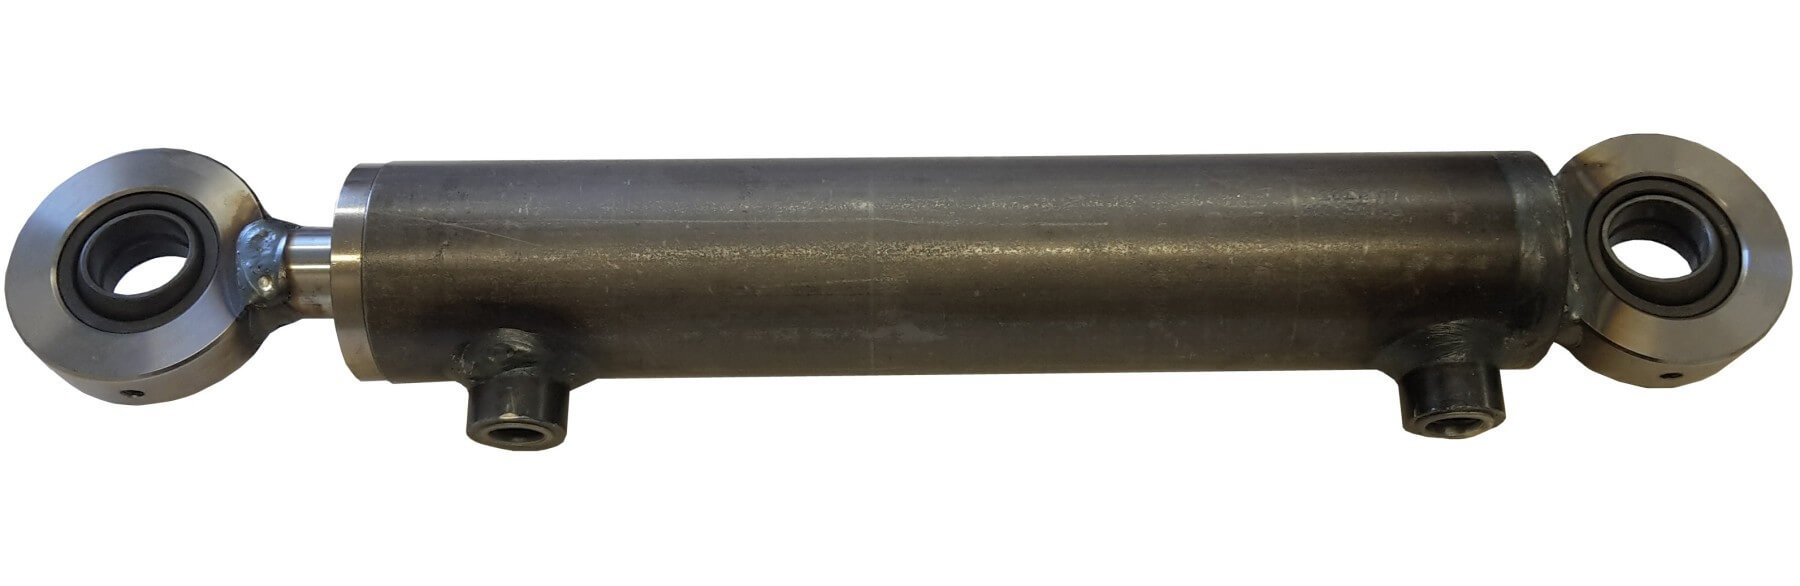 Hydraulisylinteri CL 70. 40. 800 GE - Kailatec Oy Verkkokauppa